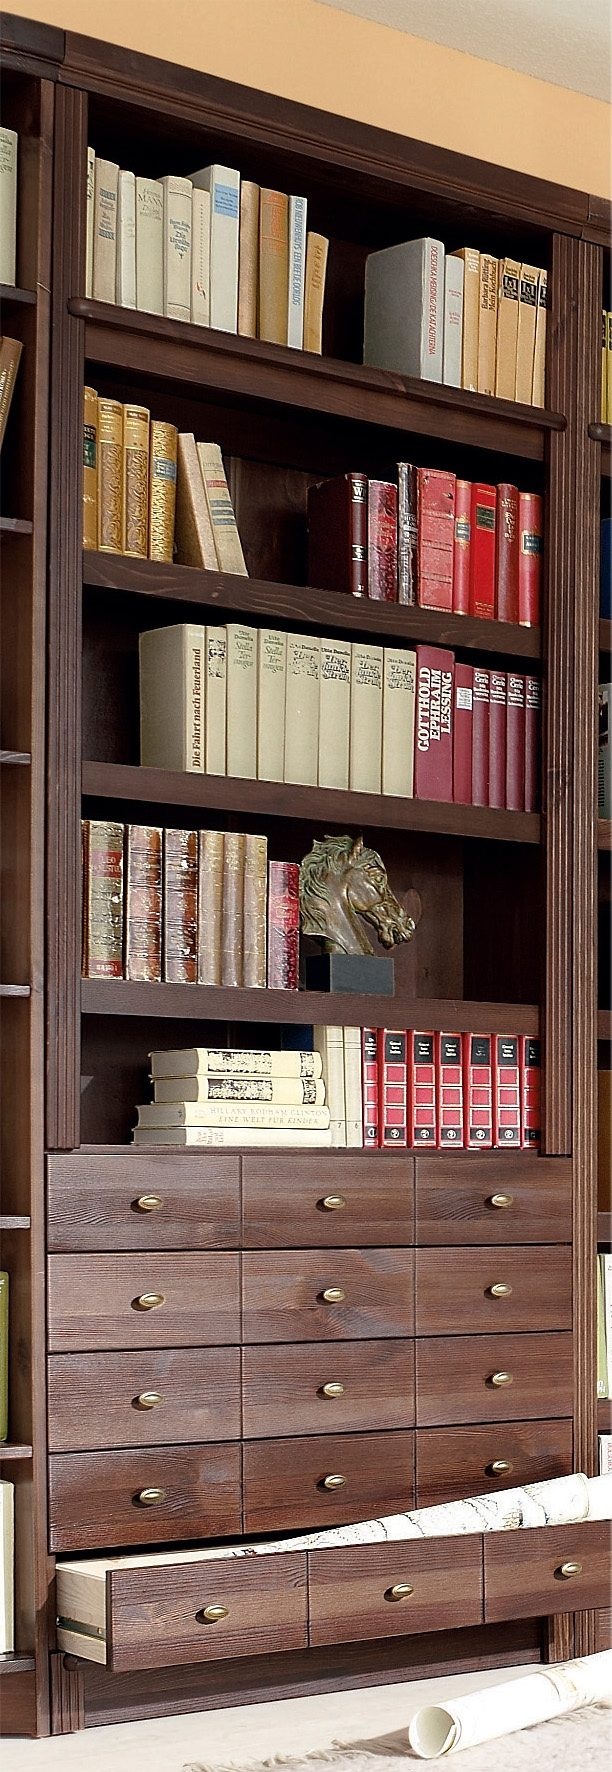 Home affaire Bücherregal »Soeren«, aus massiver Kiefer, in 2 Höhen, Tiefe 29 cm, mit 5 Schubkästen